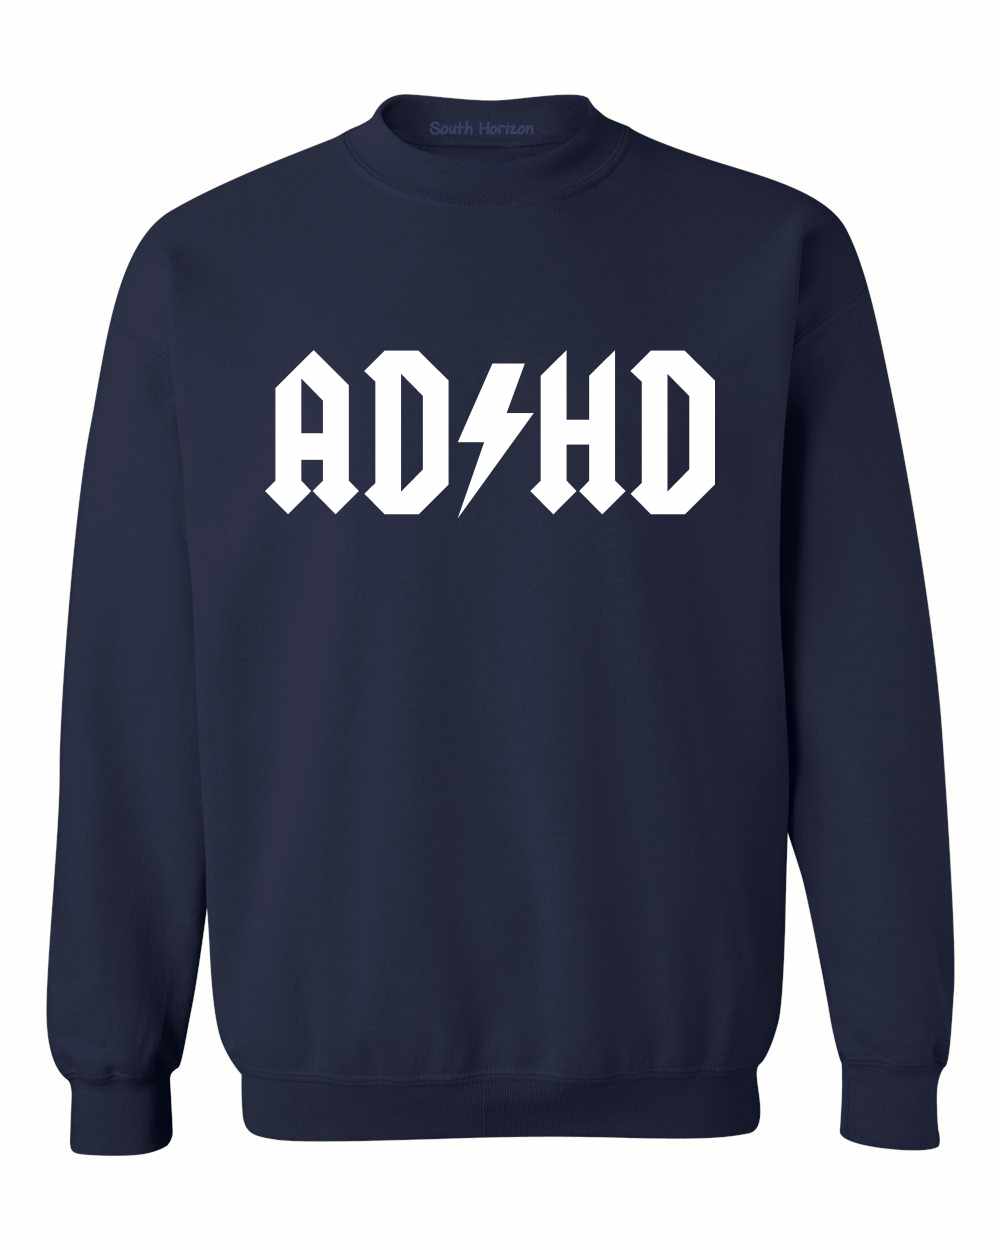 ADHD on SweatShirt (#828-11)